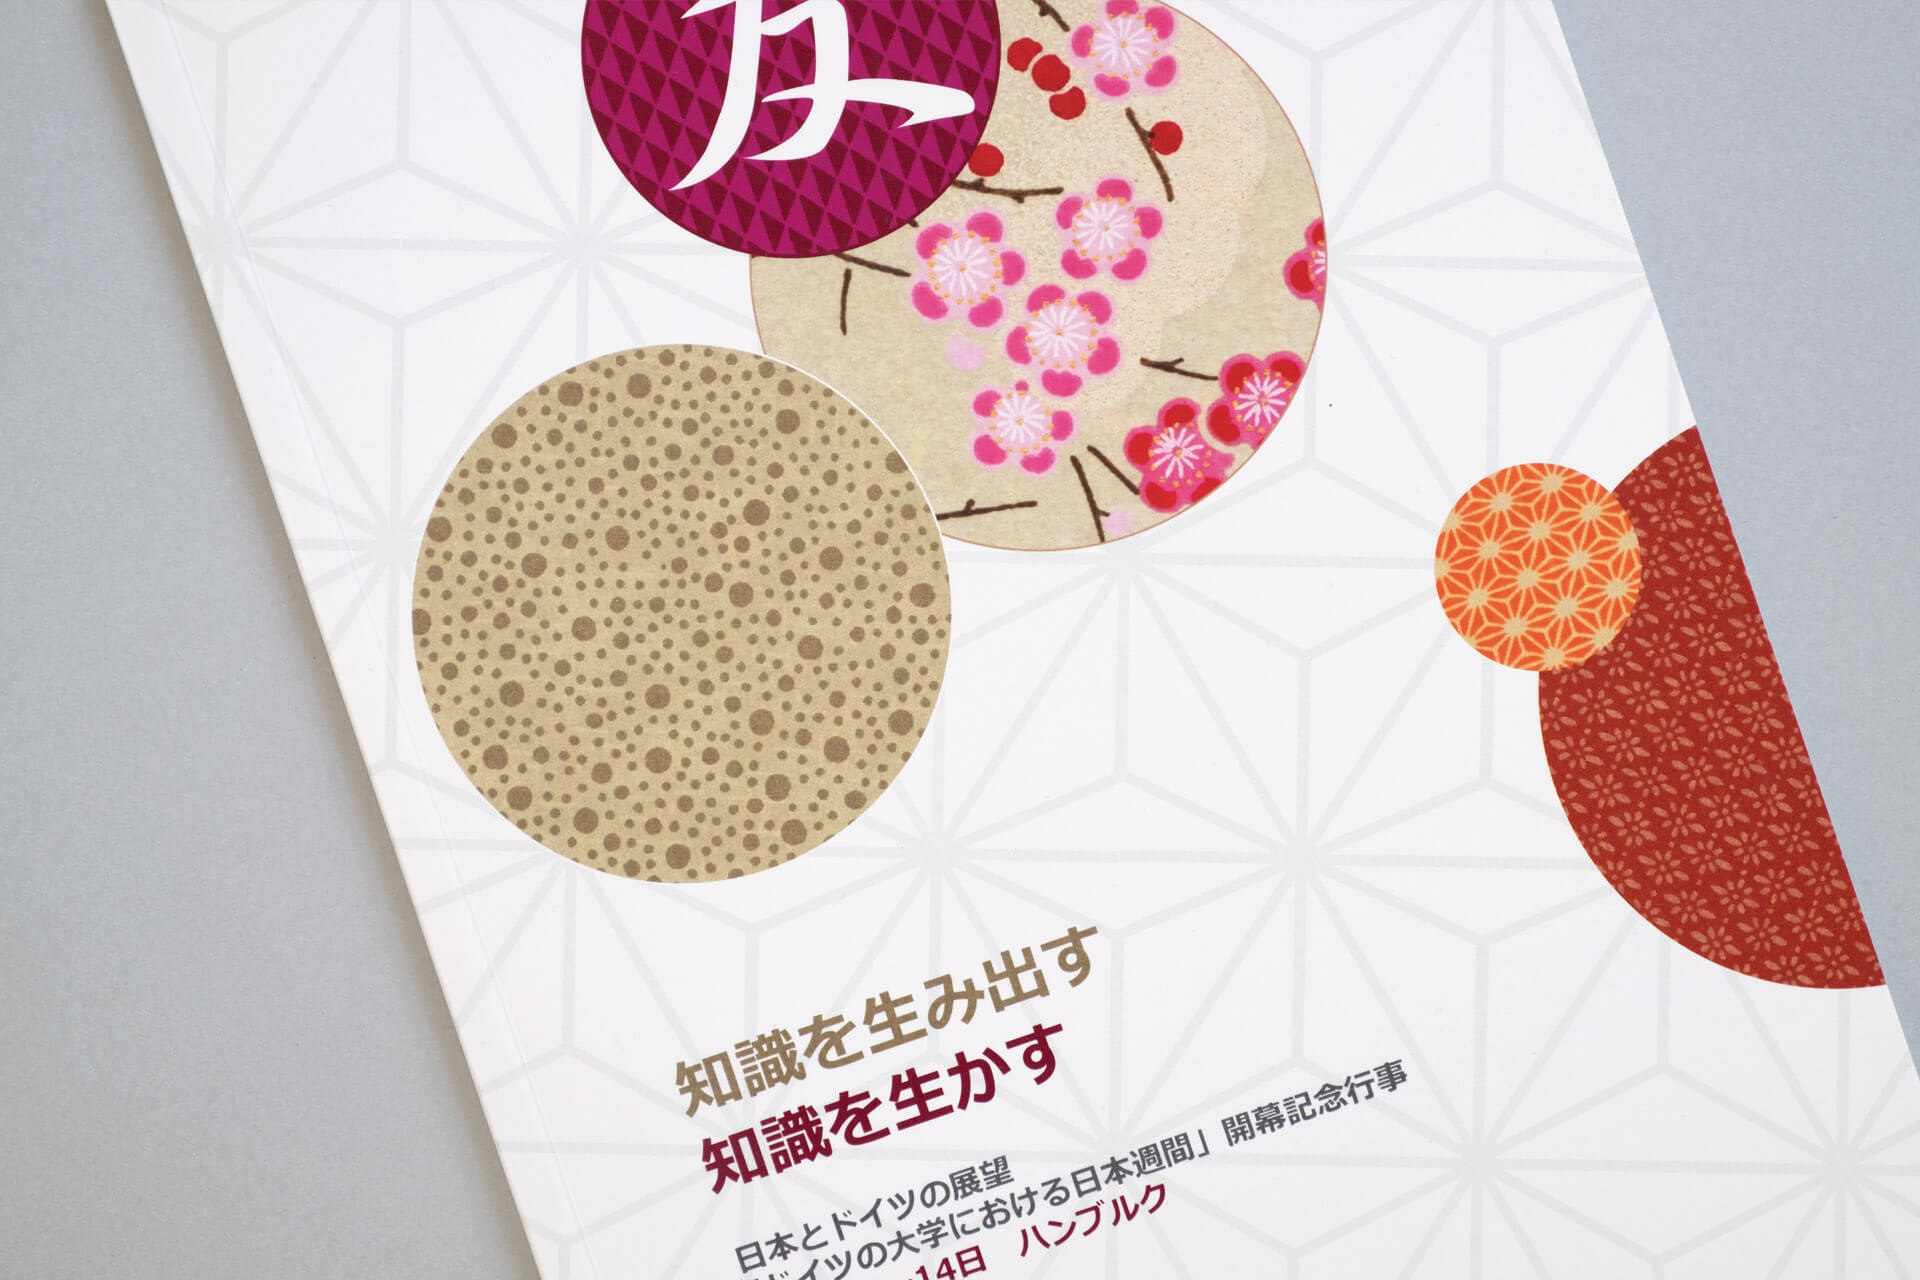 Detailfoto des Covers der Publikation „Wissen schaften – Wissen nutzen“ mit japanischen Ornamenten und Mustern